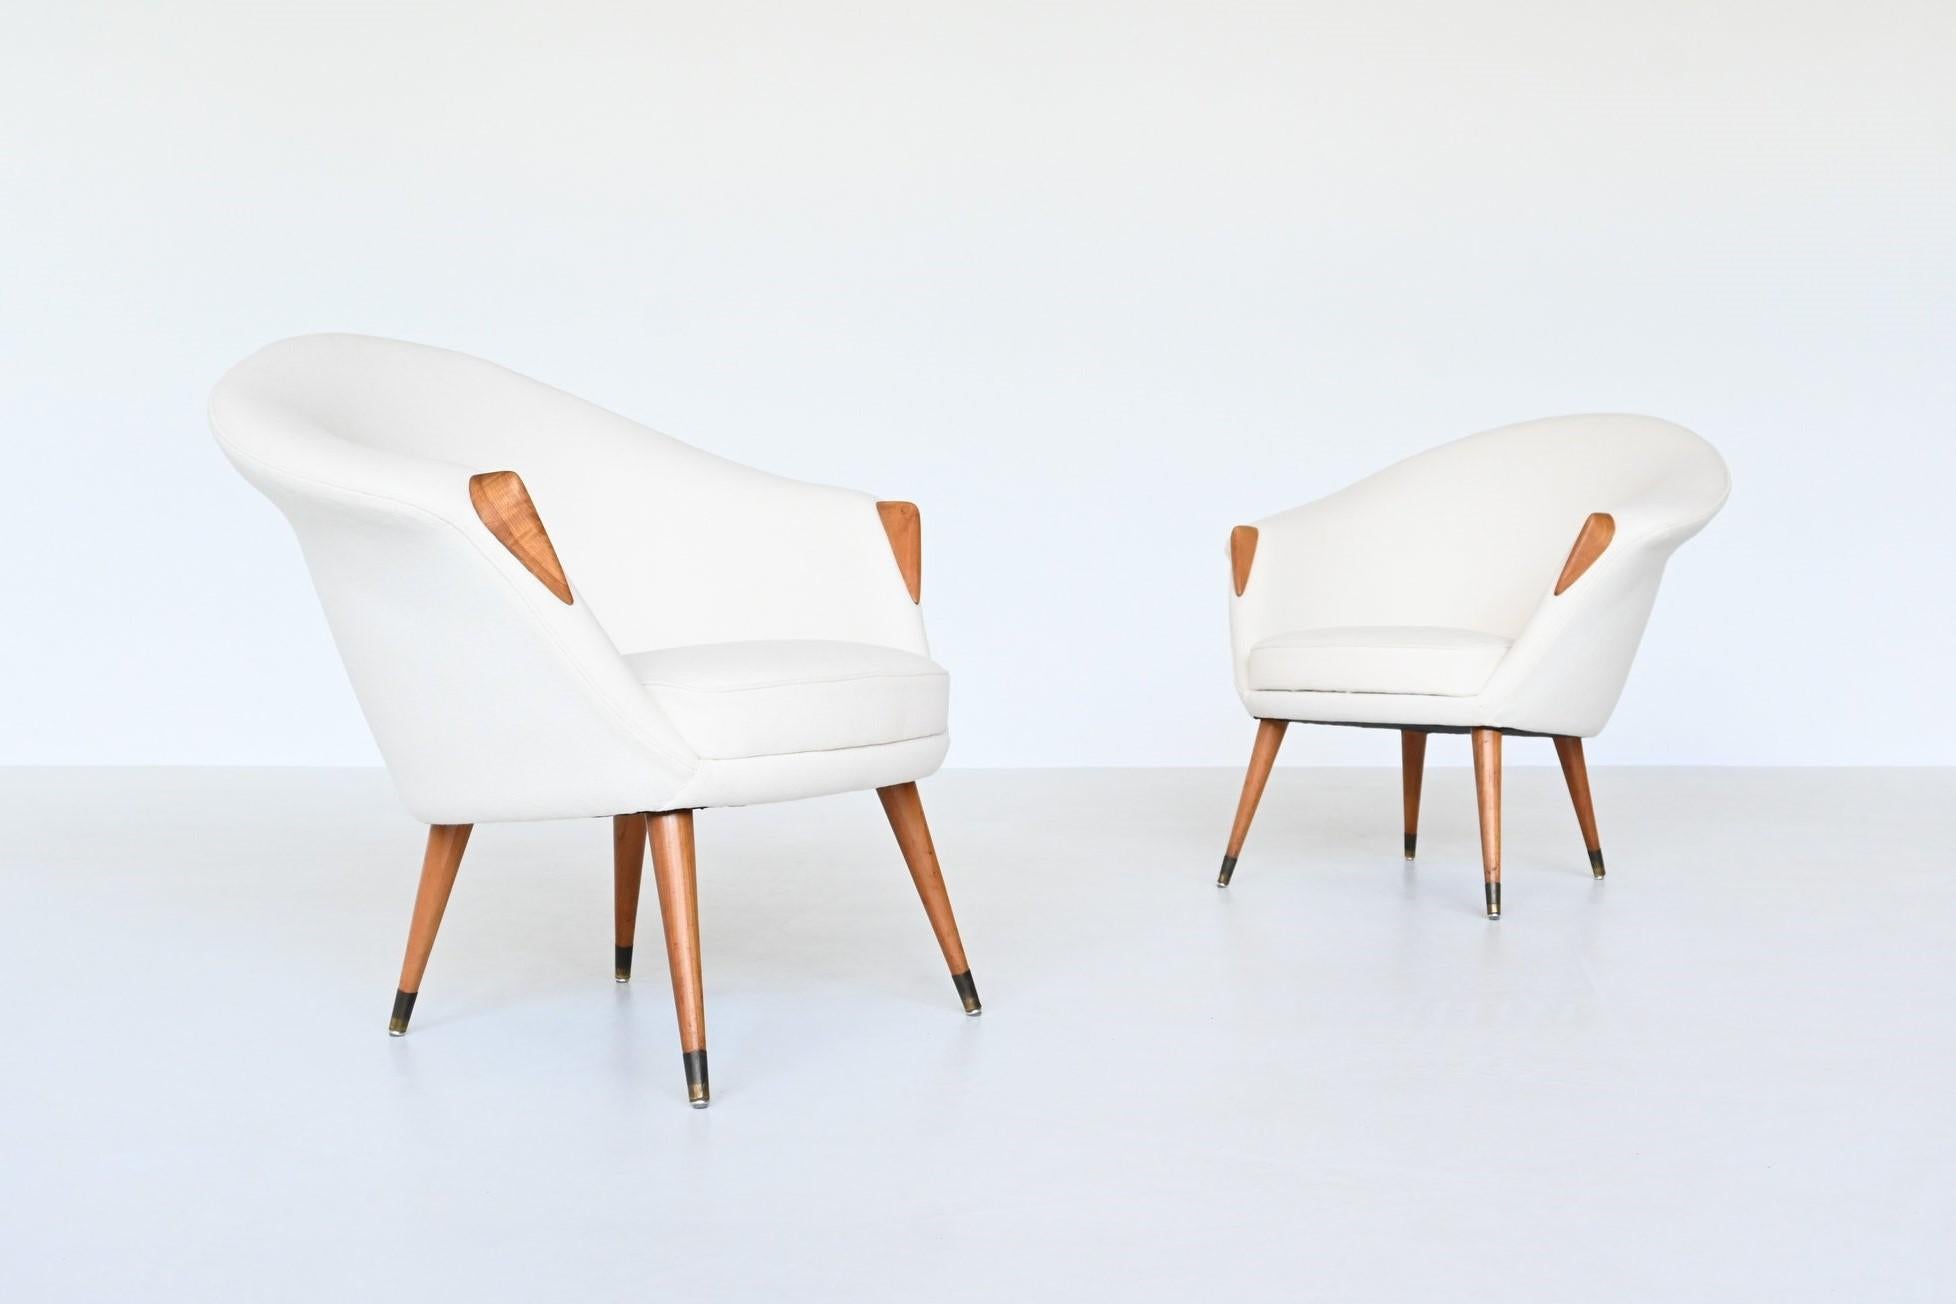 Schönes Paar skandinavischer Sessel im Stil von Nanna Ditzel, Dänemark 1960. Seine Form ist dem Krankenpflegestuhl von Nanna Ditzel sehr ähnlich. Die geschwungene Schale ist professionell mit einer dicken und weichen Polsterung aus 100 % Wolle in